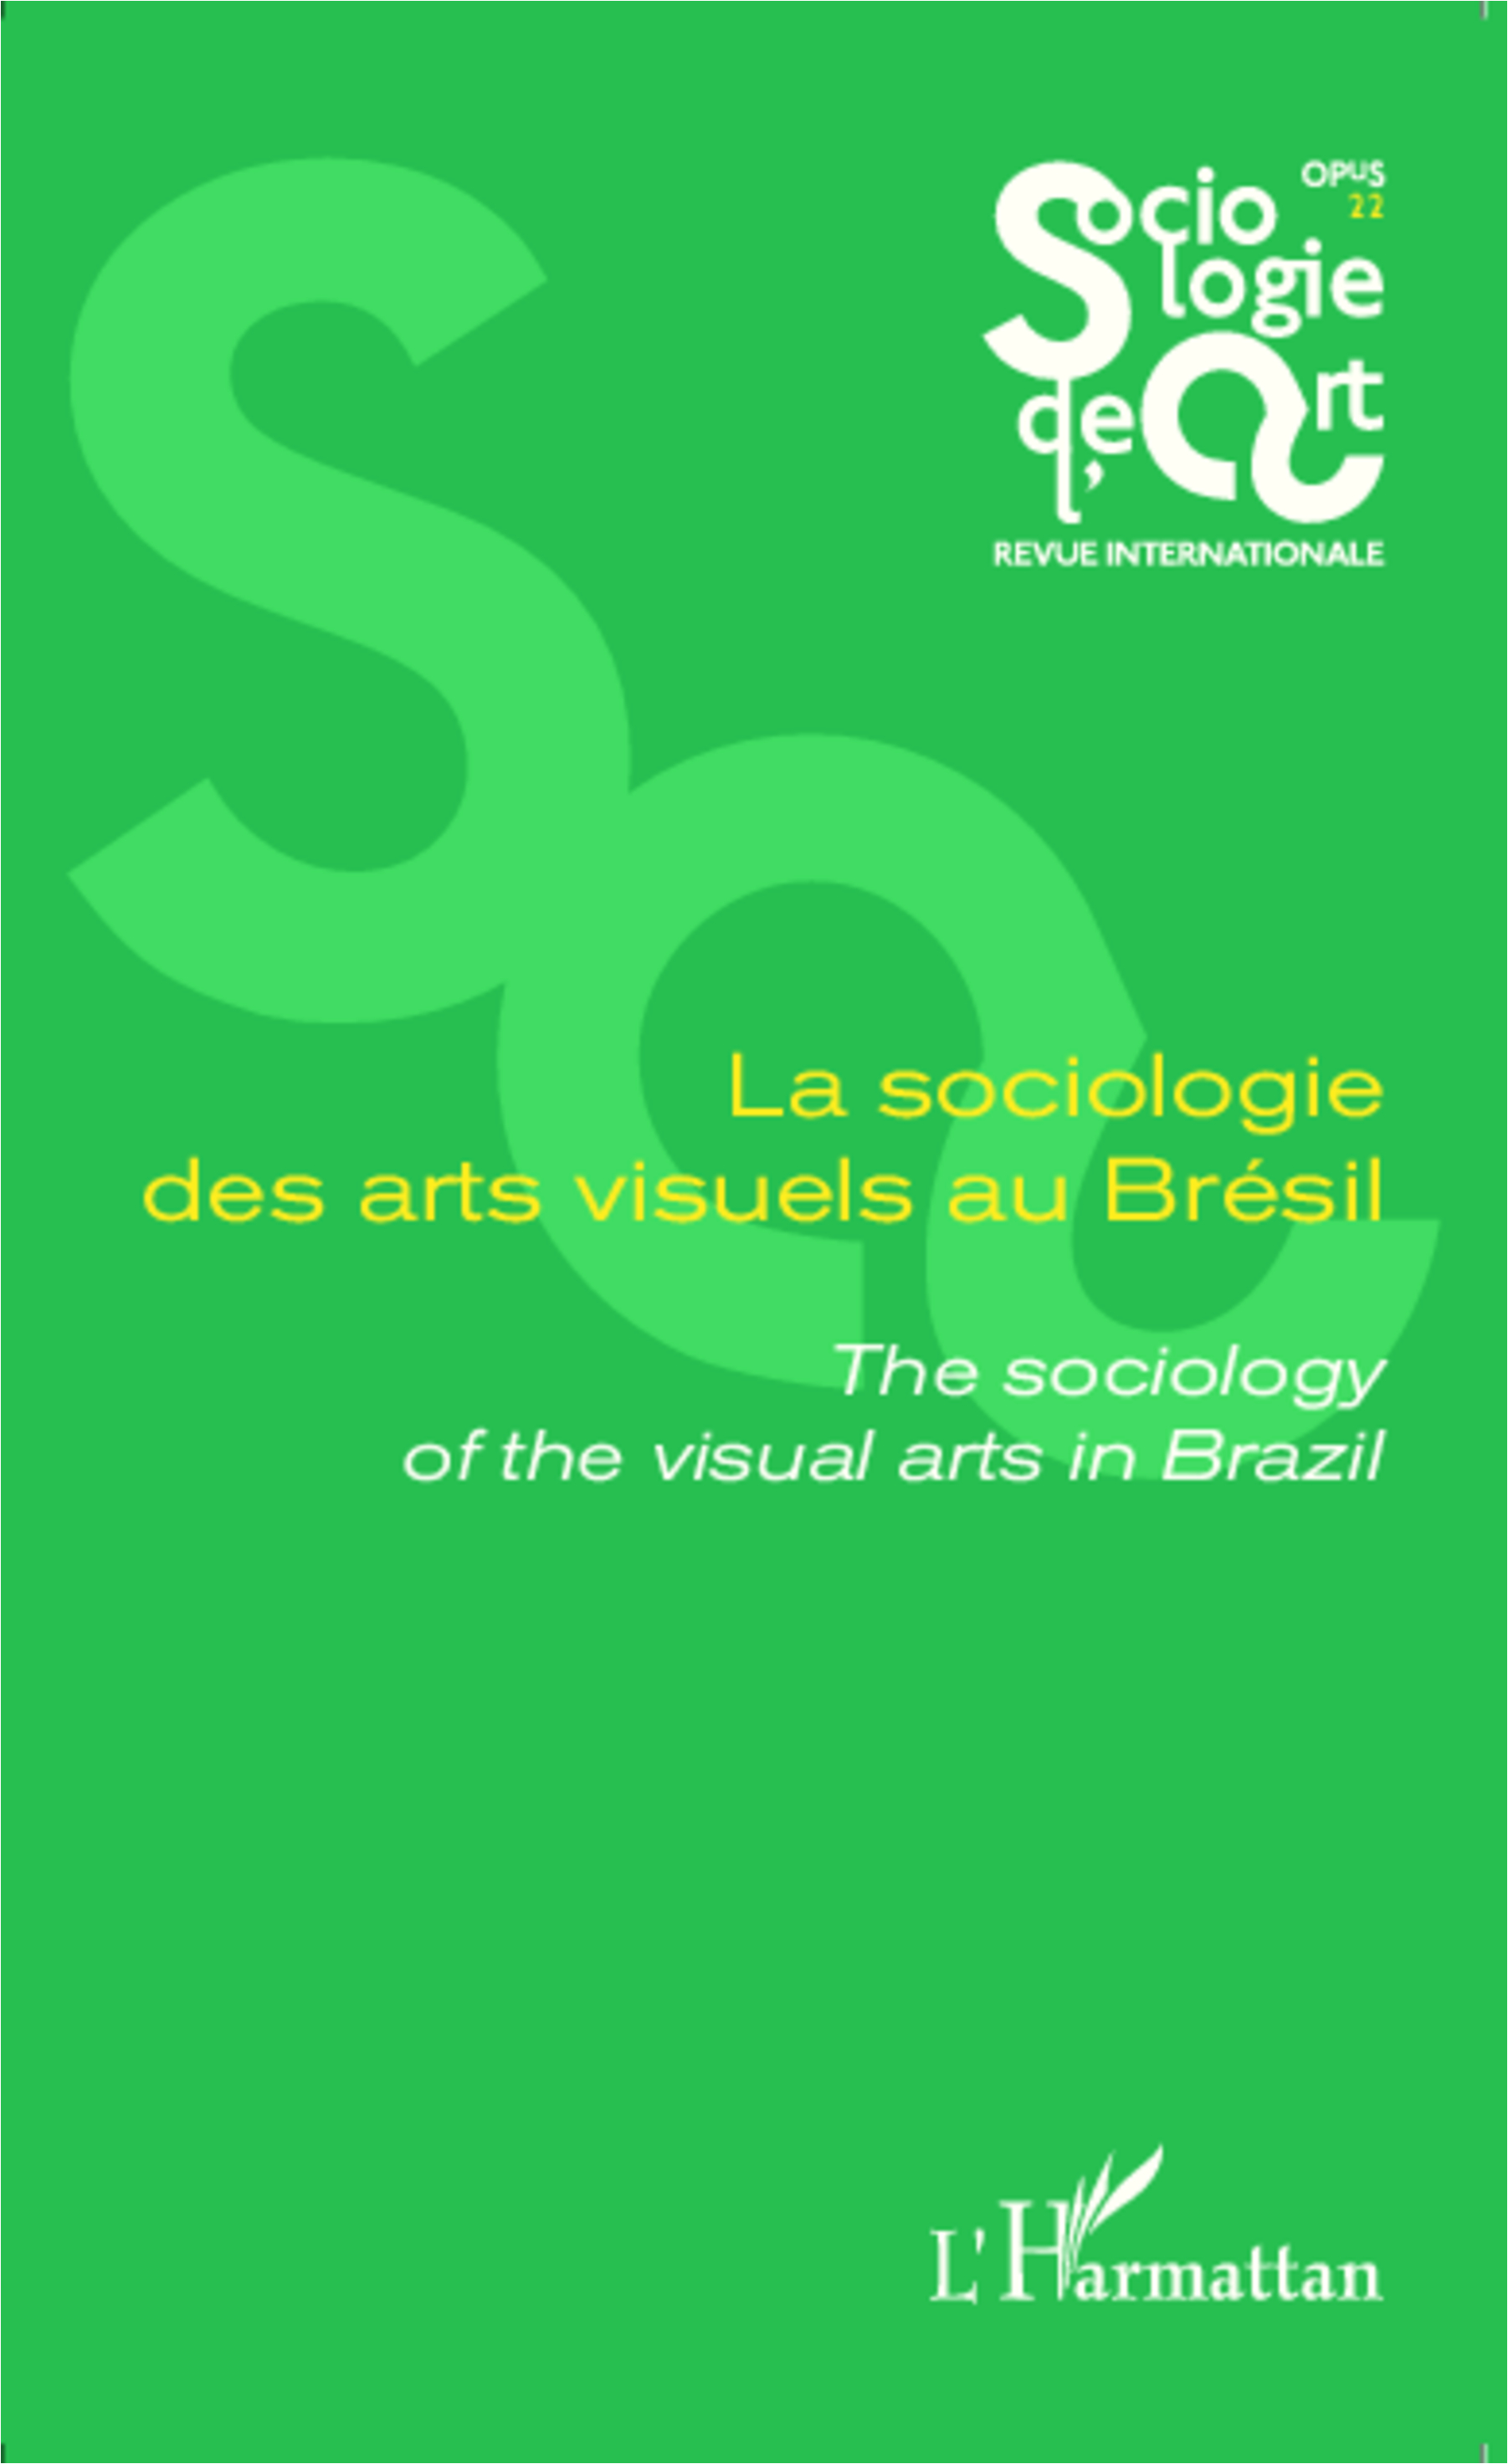 La sociologie des arts visuels au Brésil